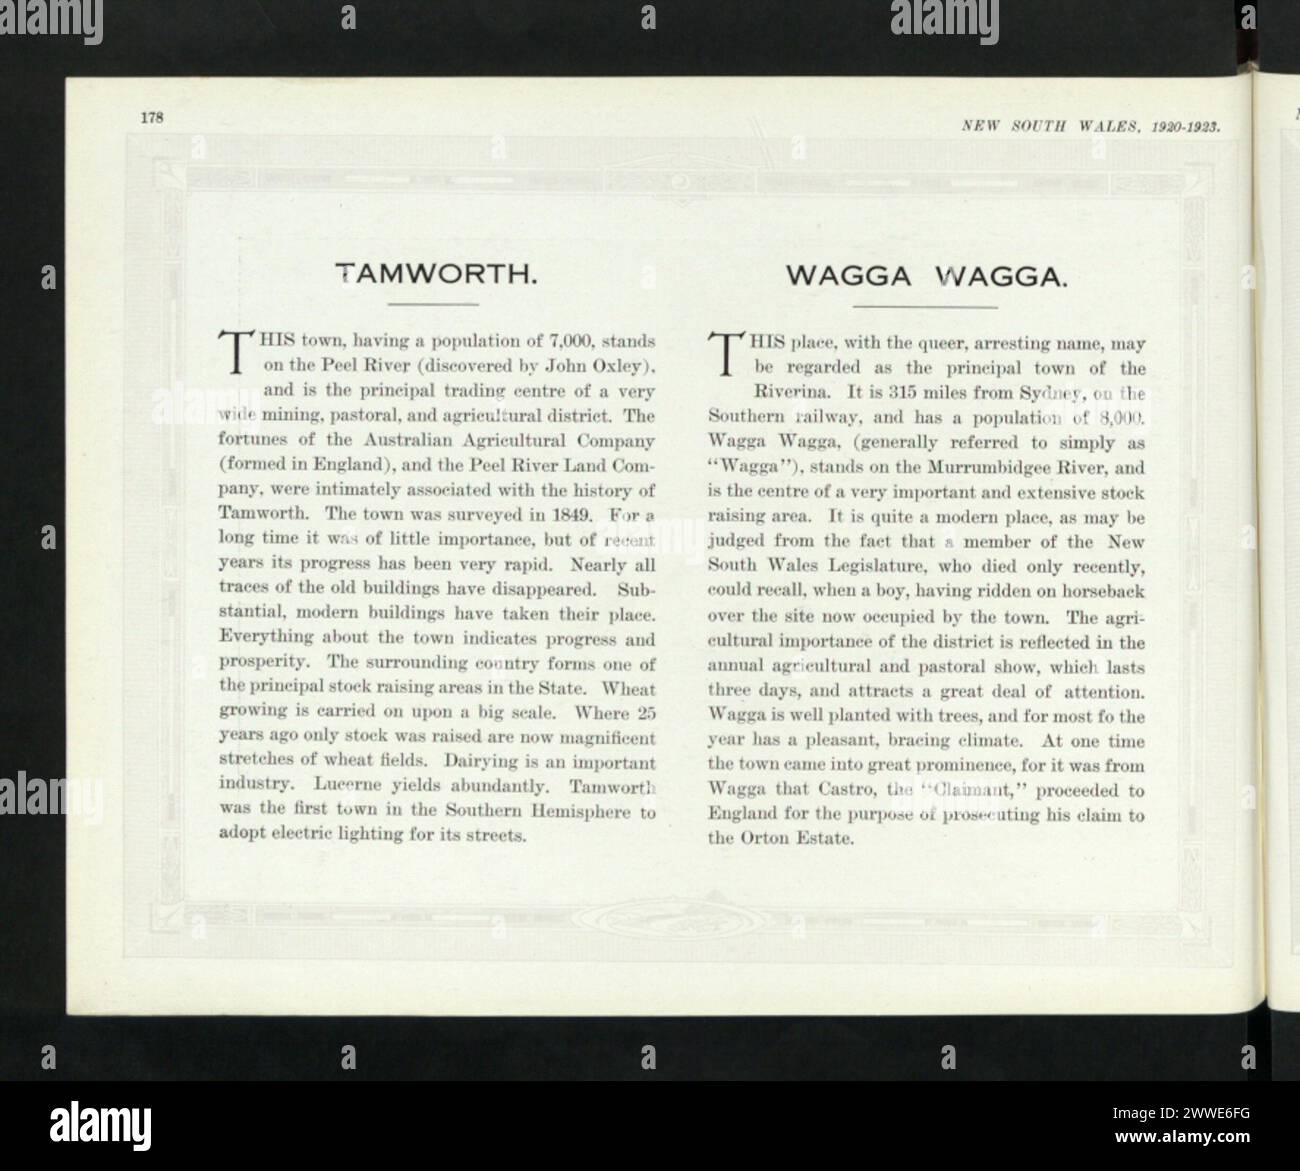 Description: Tamworth. Wagga Wagga. Location: New South Wales, Tamworth, Sydney, Riverina, Australia Date: 1849 australia, australasia, oceania, australasiathroughalens Stock Photo